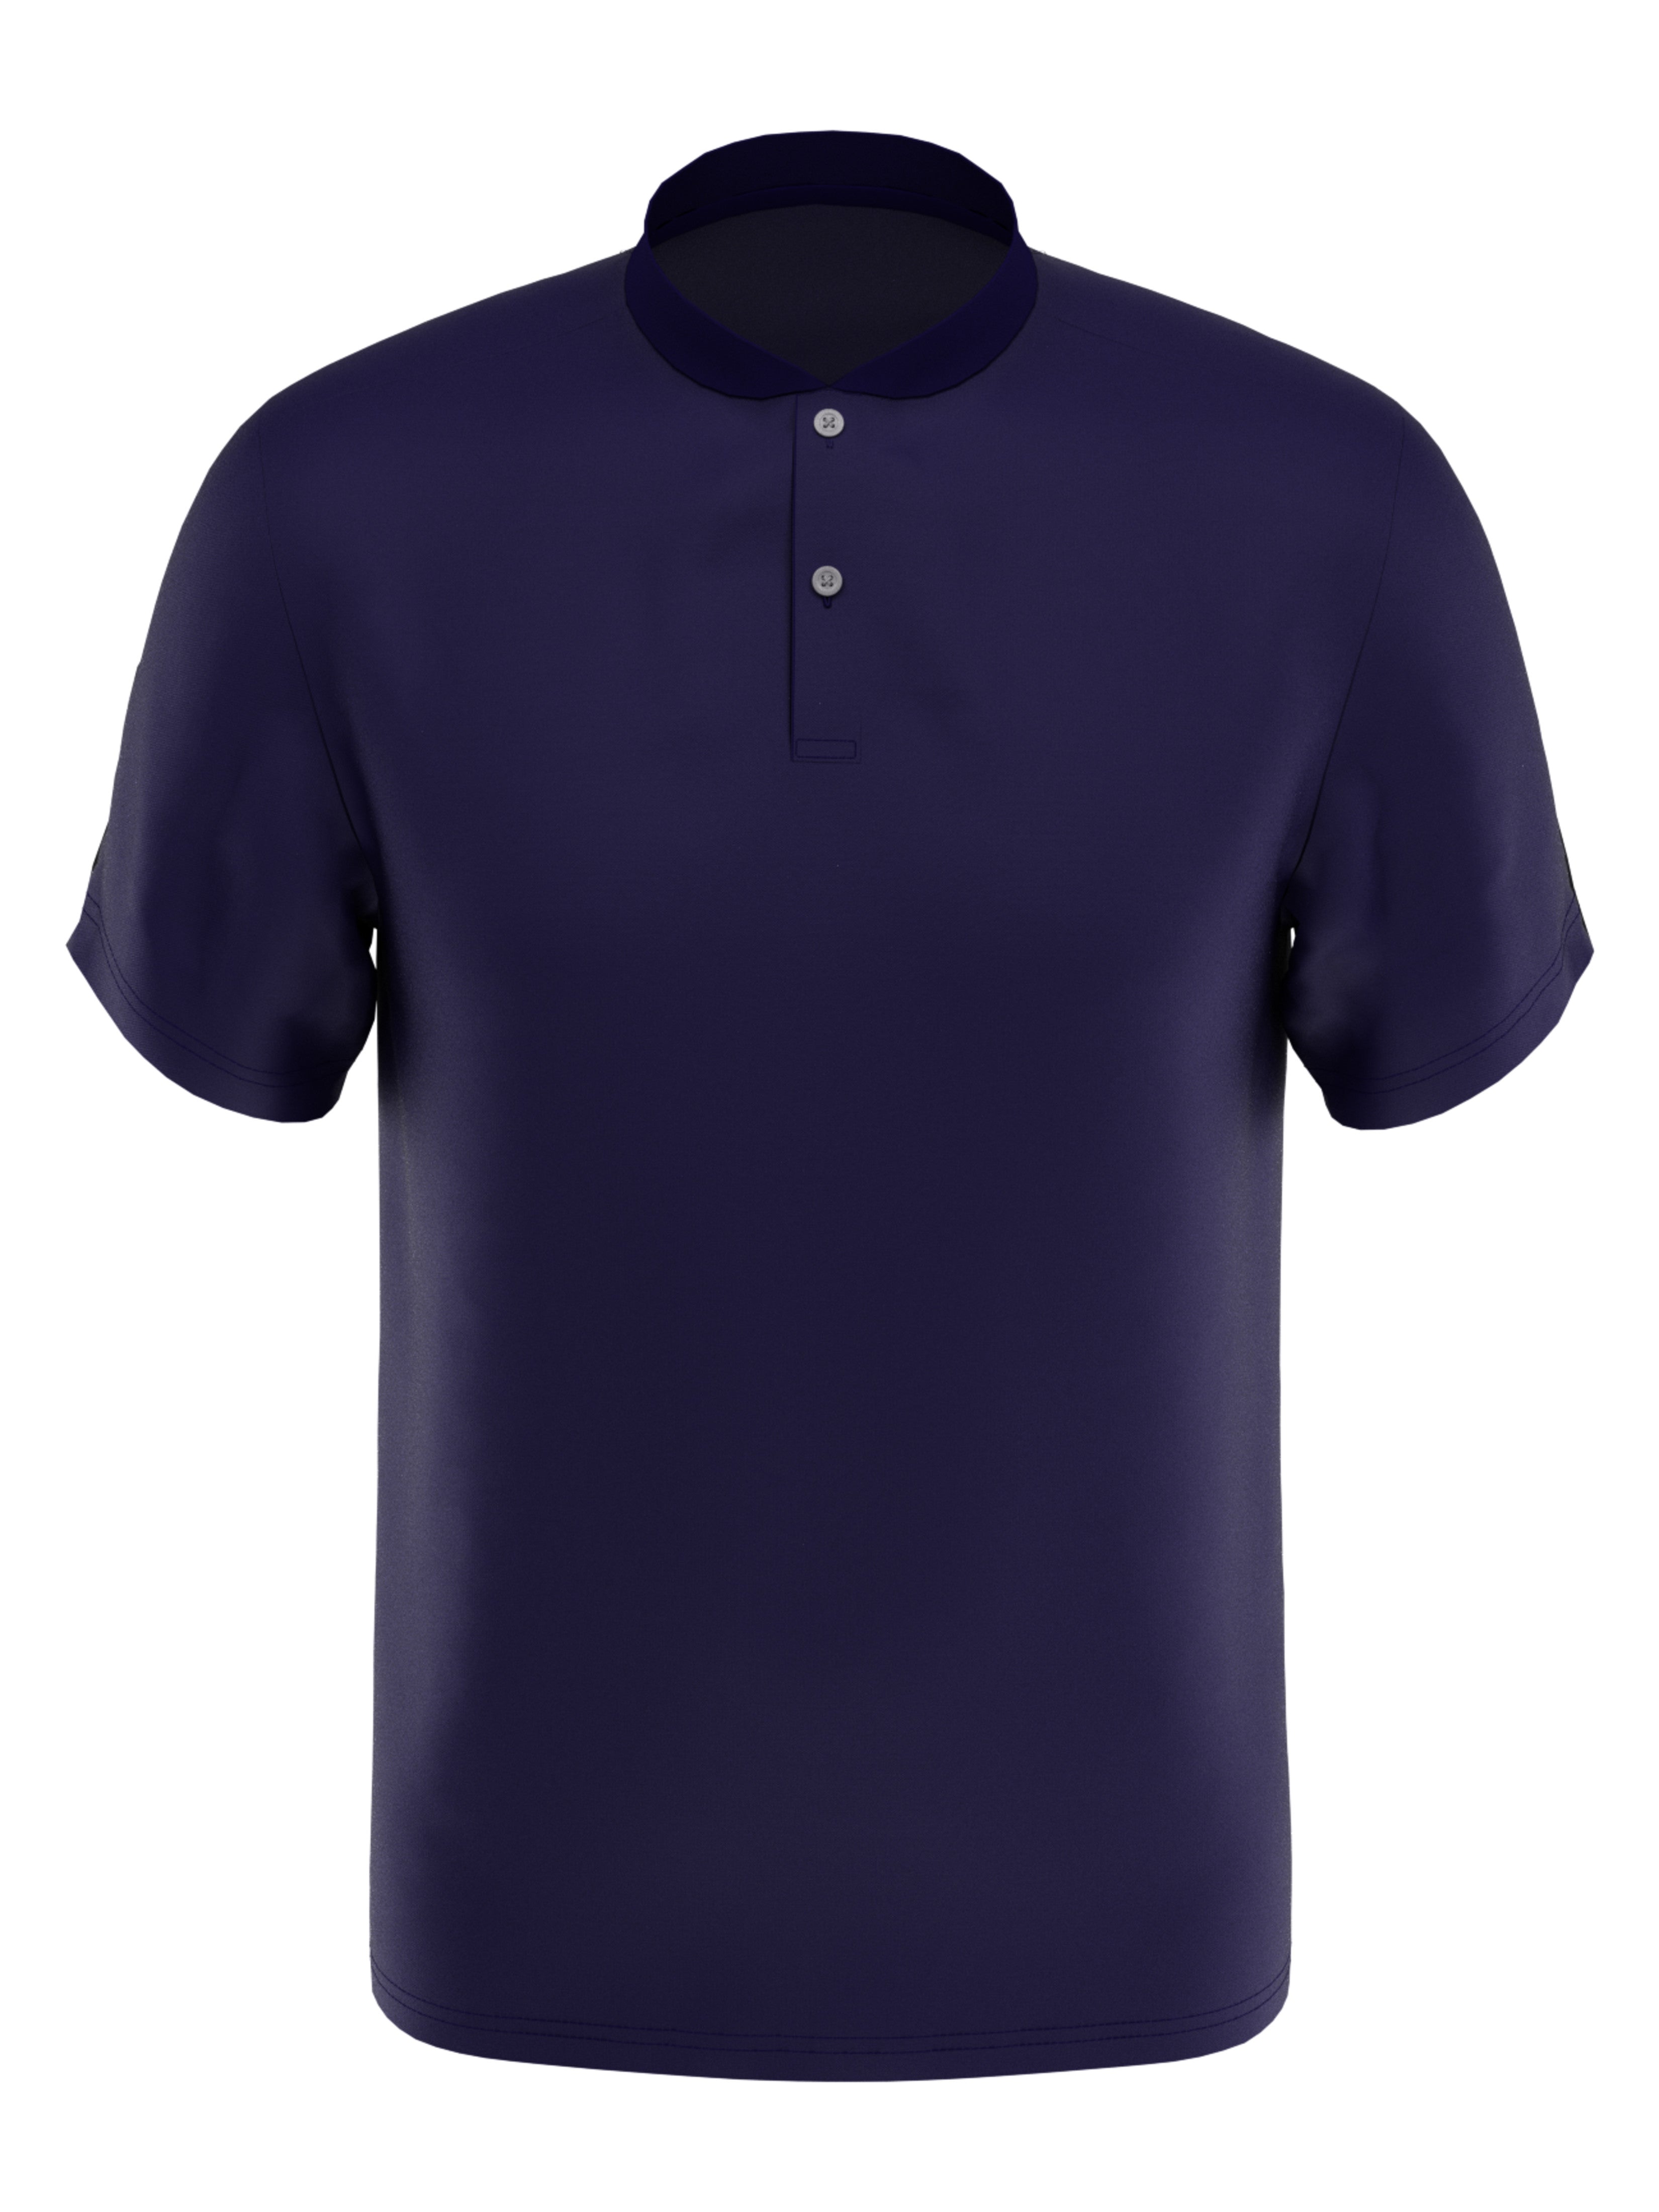 PGA TOUR Apparel Boys Edge Collar Pique Golf Polo Shirt, Size Medium, Navy Blue, 100% Polyester | Golf Apparel Shop